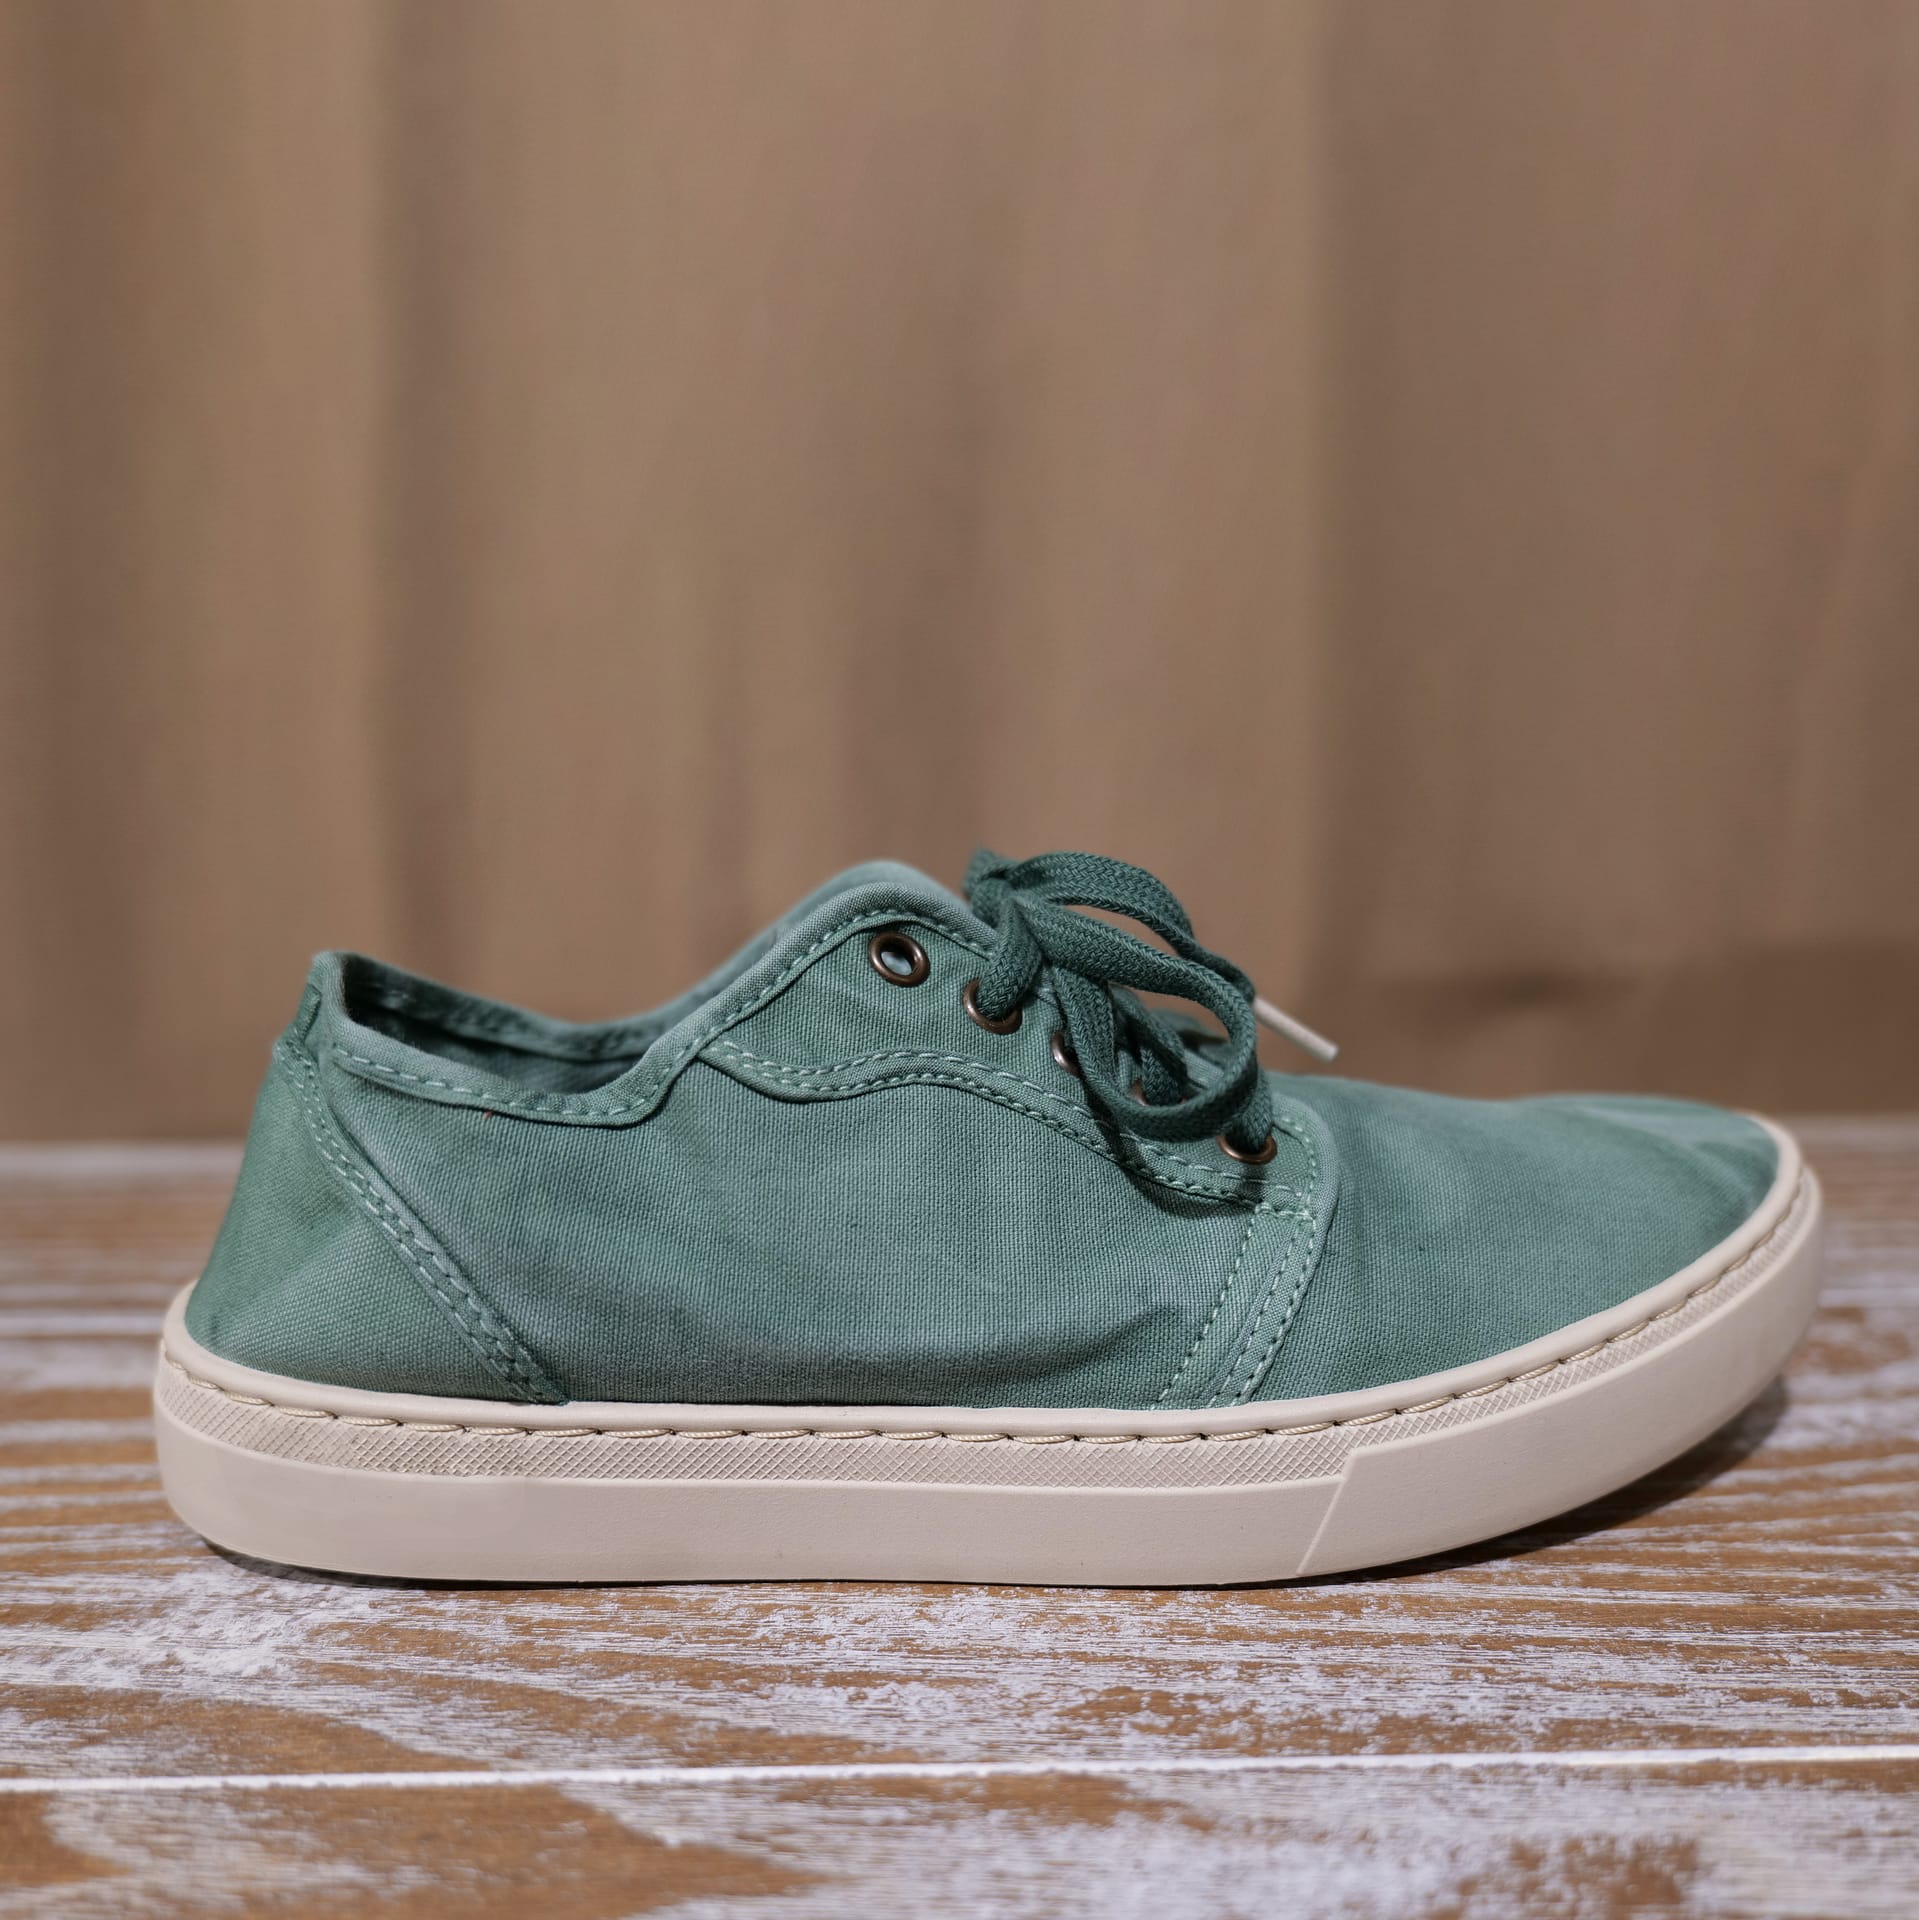 Chaussure basket vert d'eau externe